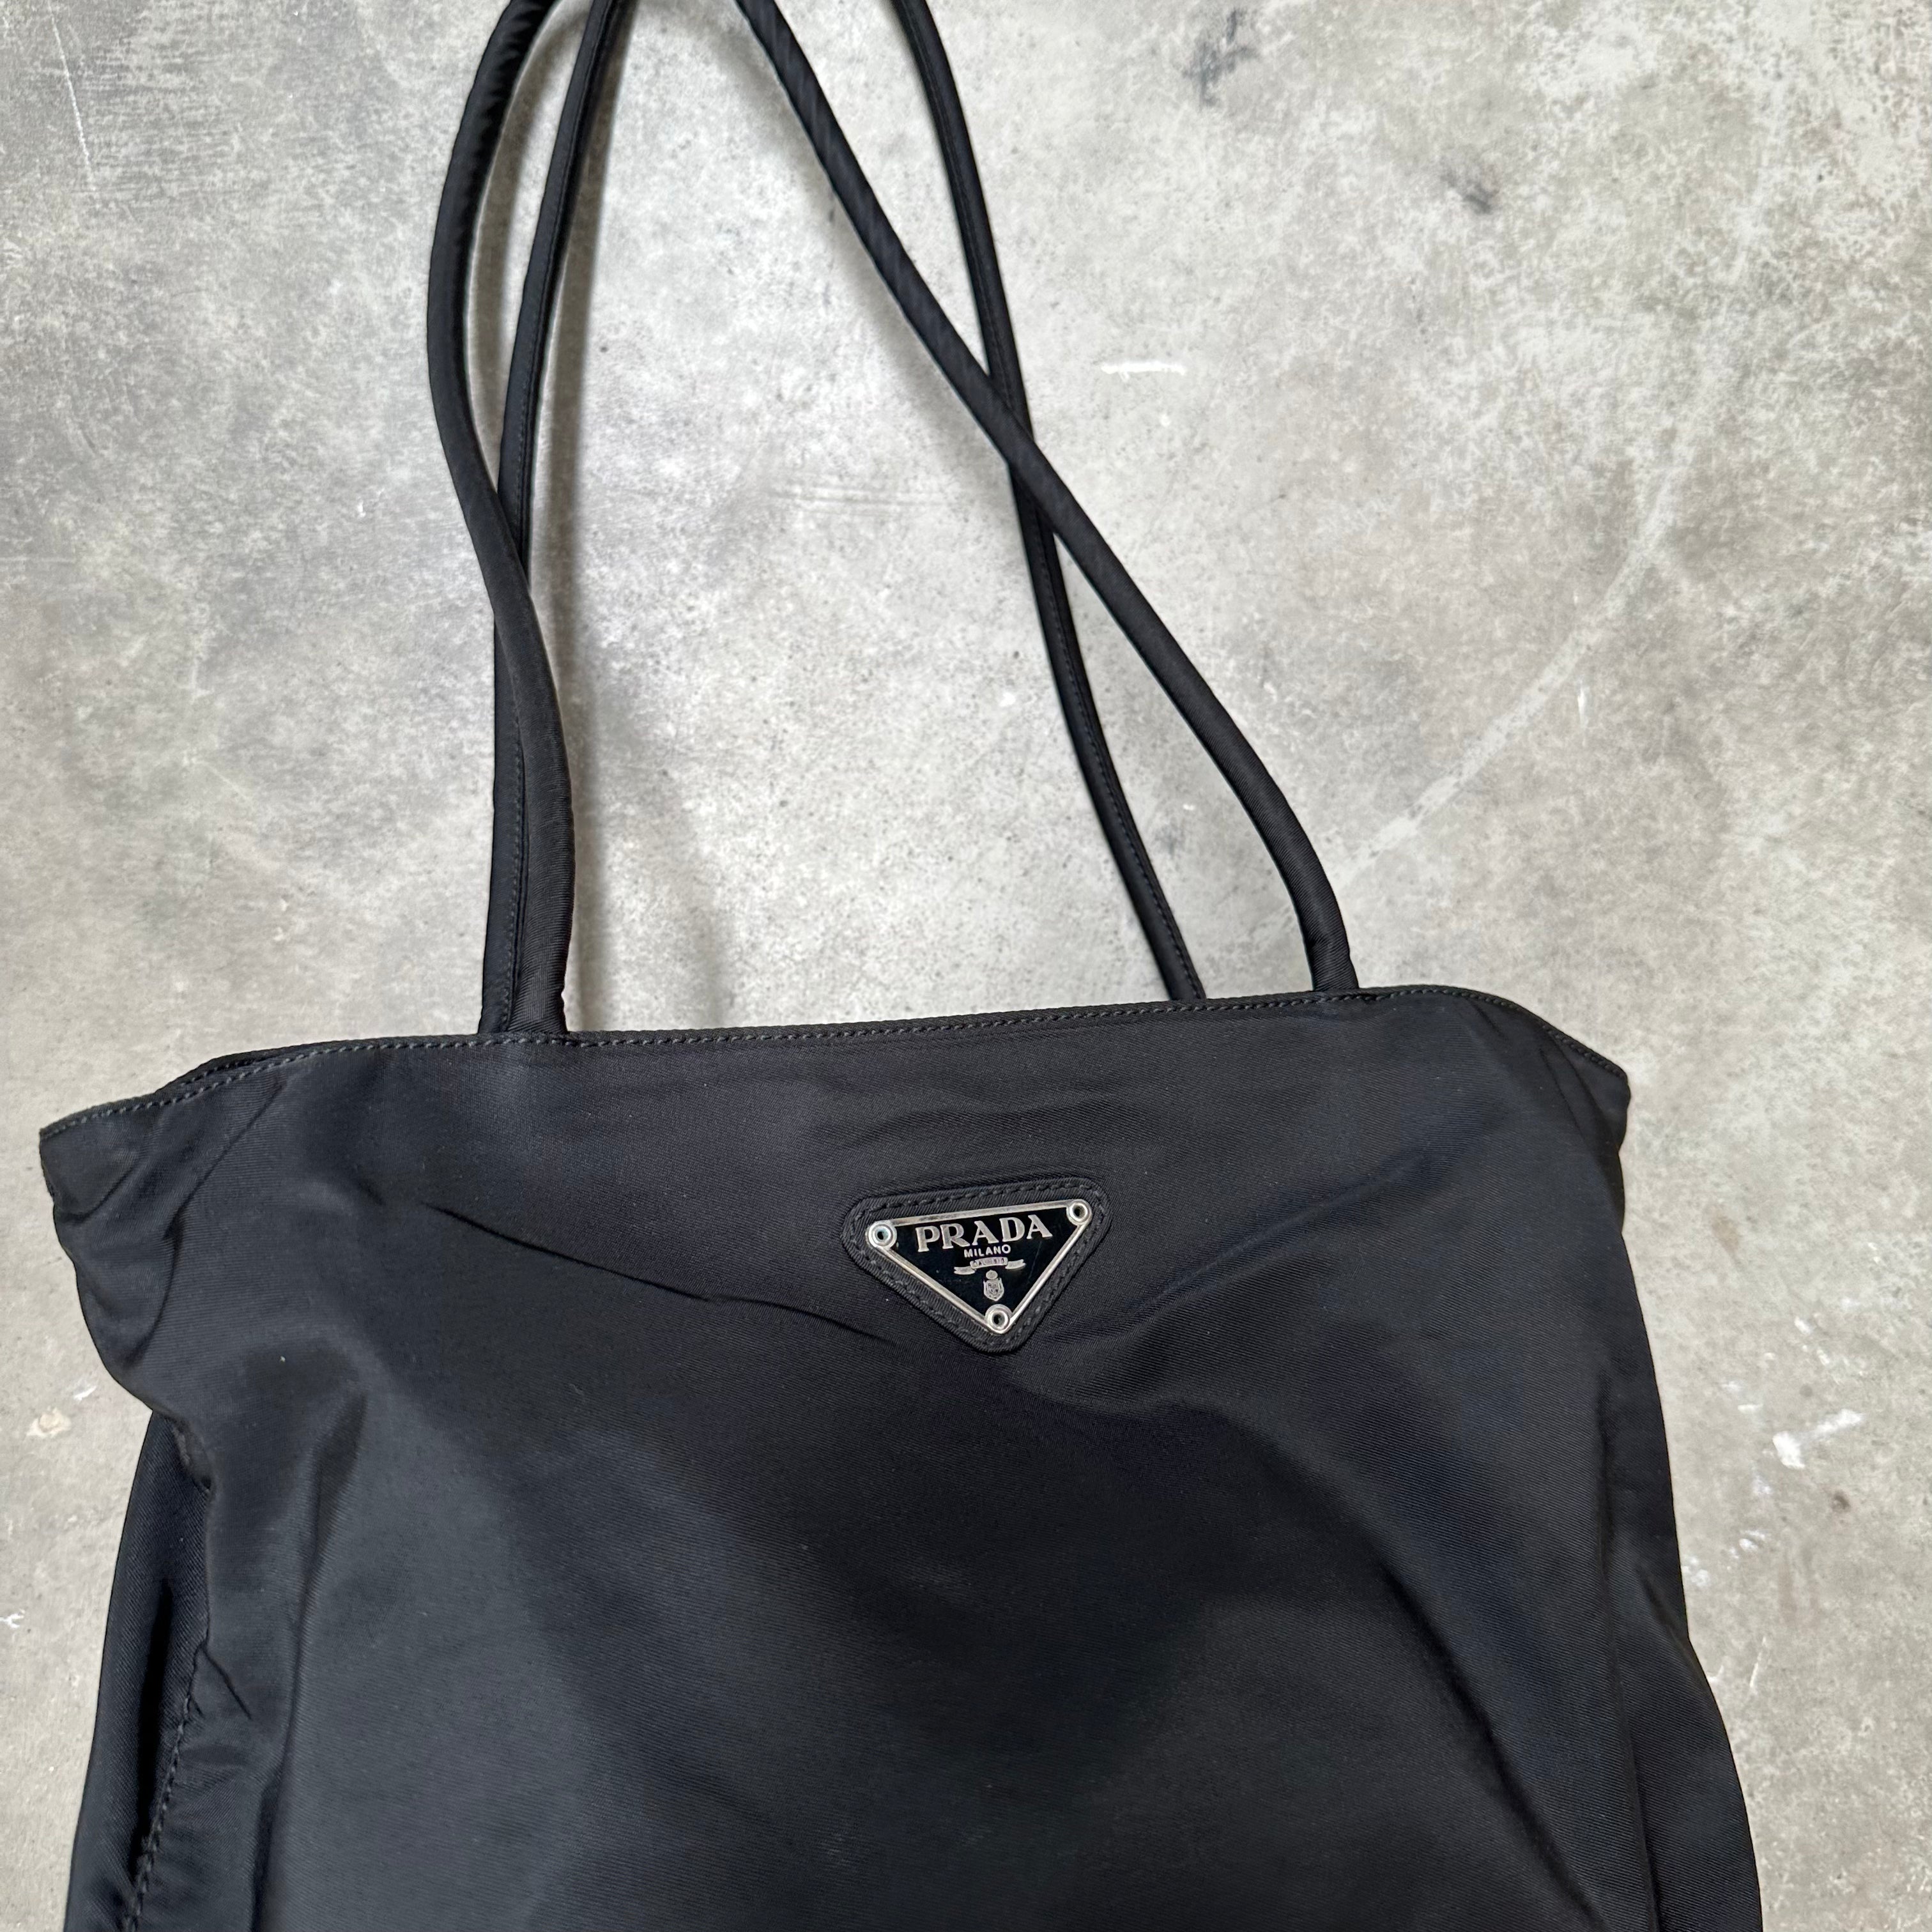 Prada Long Strap Tote Bag Nylon Black